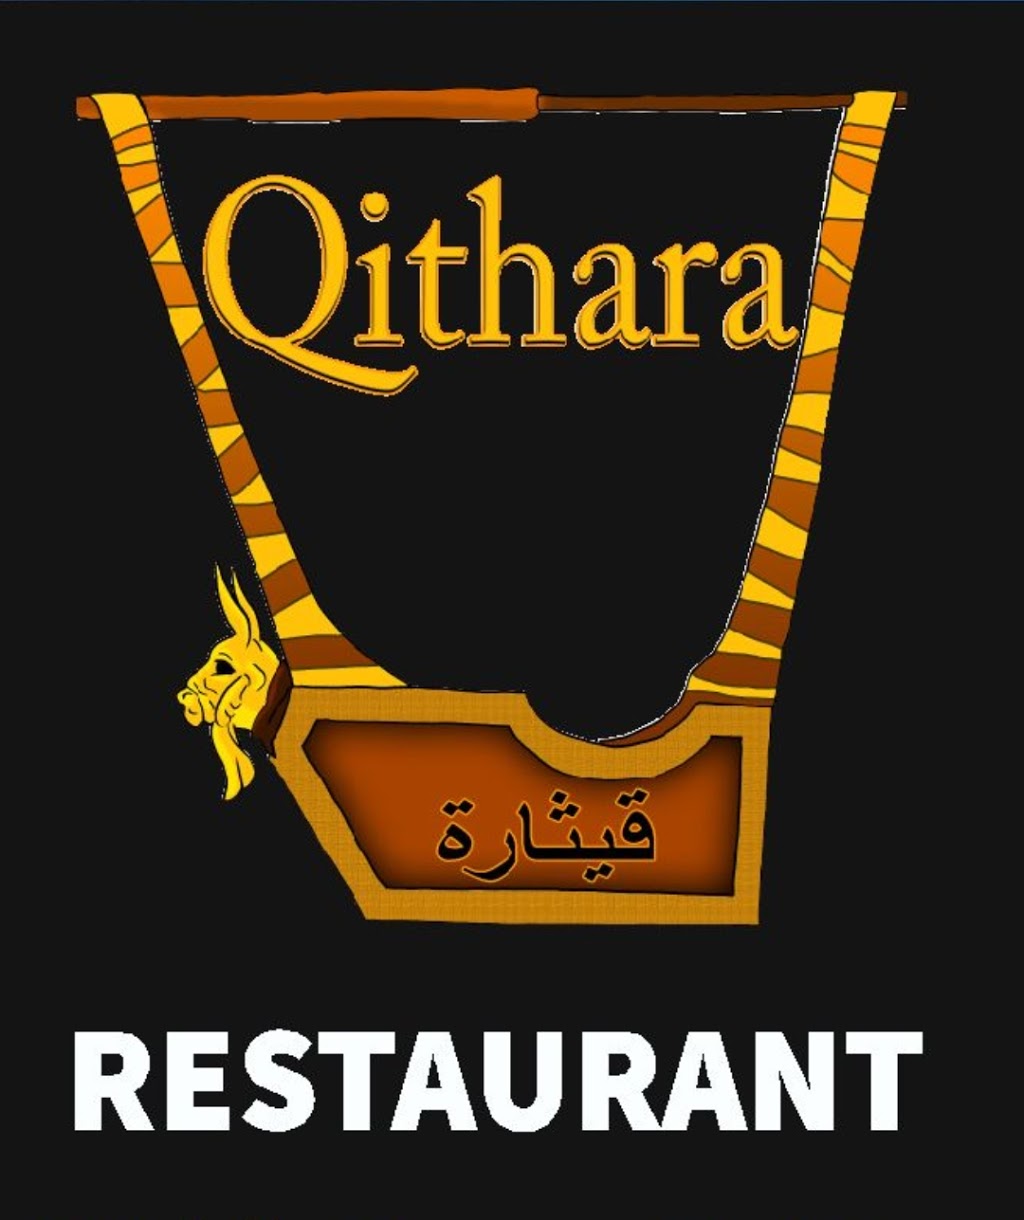 Qithara Restaurant | restaurant | 162 Camp Rd, Broadmeadows VIC 3047, Australia | 93595159 OR +61 93595159